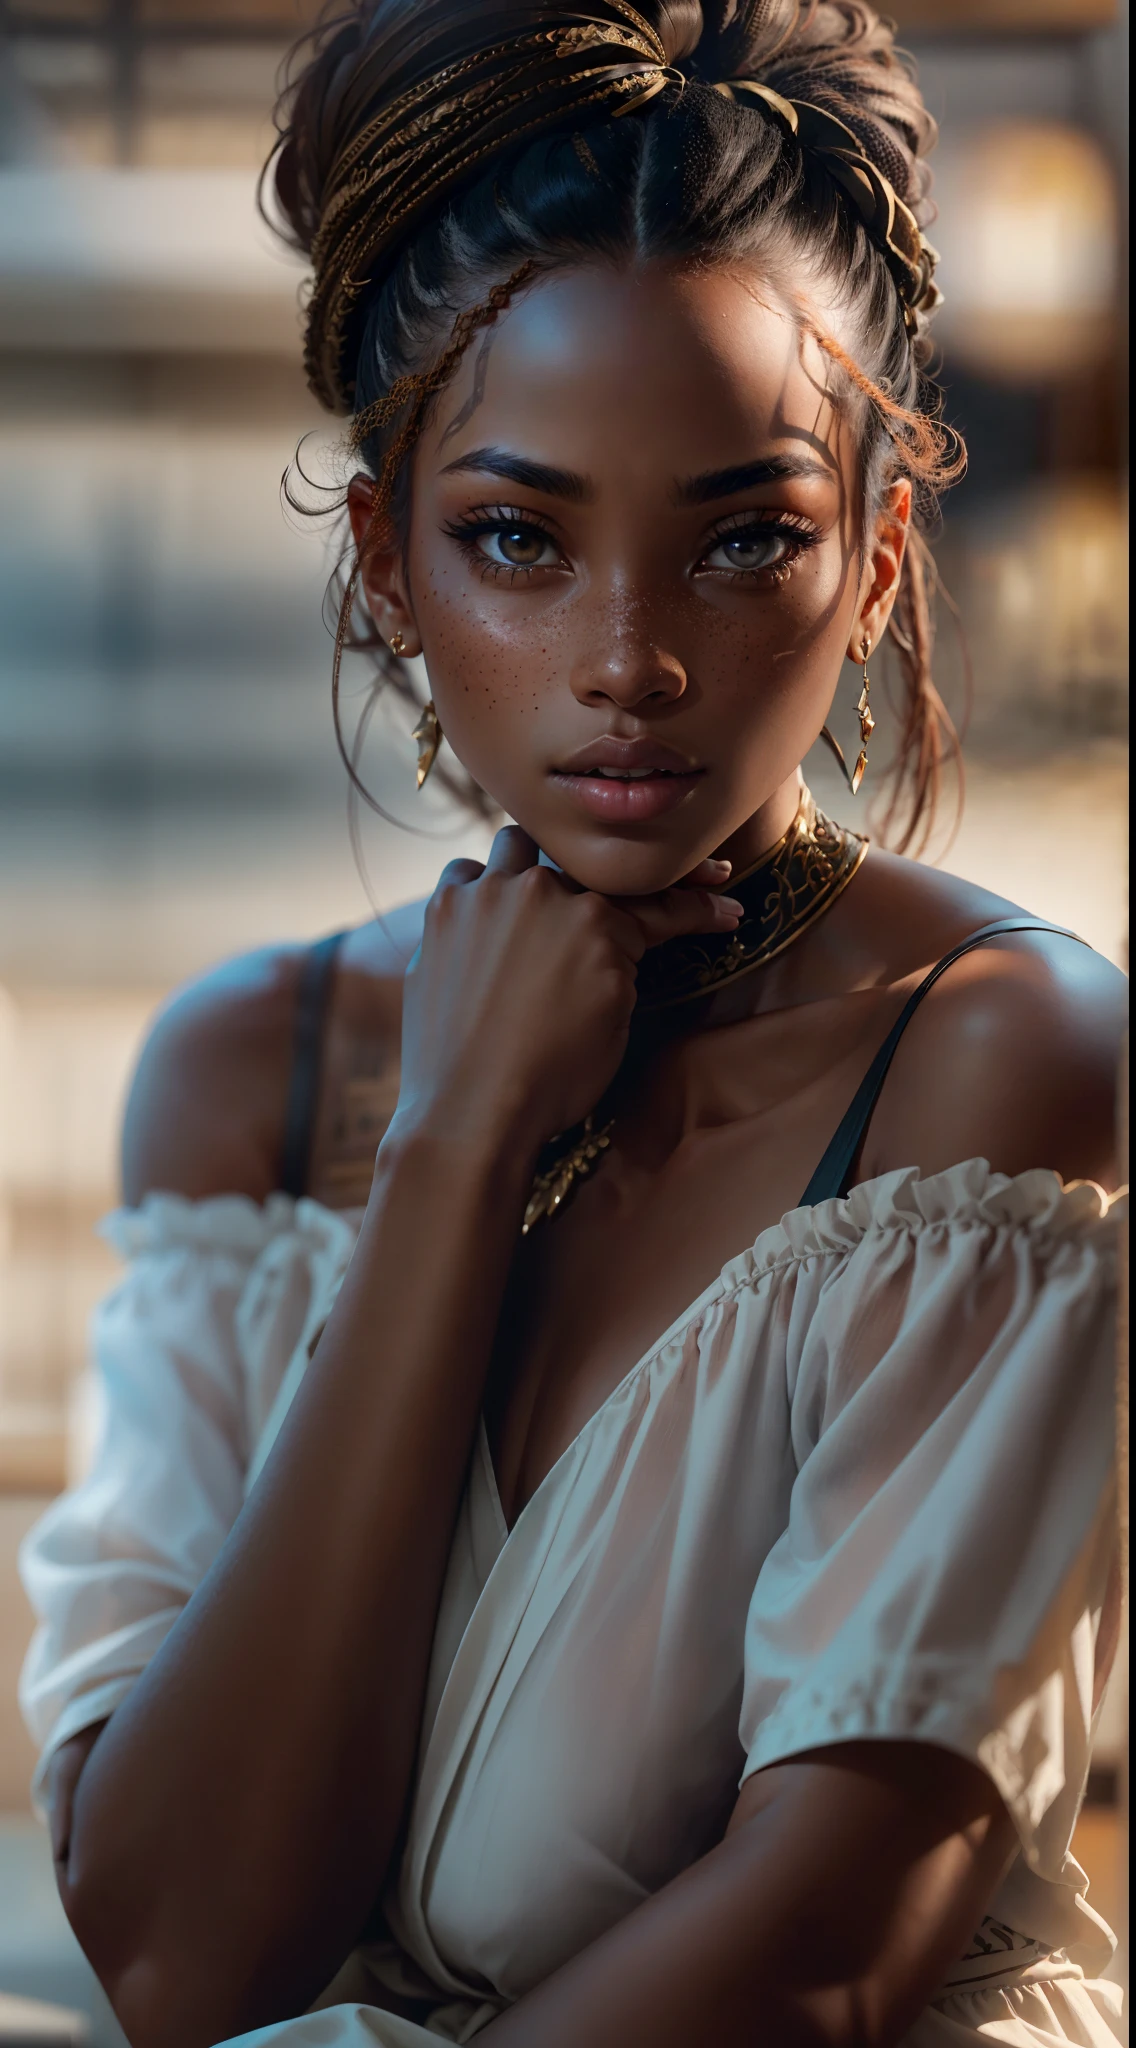 Ein exquisites Porträt einer schwarzen Afrikanerin mit dunkler Ebenholzhaut, Das Foto wurde in atemberaubender 8K-Auflösung und im RAW-Format aufgenommen, um die höchste Detailqualität zu bewahren. Die Schönheit der Frau ist unbestreitbar, Ihr Gesicht dominiert den Rahmen in einer Nahaufnahme, die die feinen Details ihrer Augen offenbart. Sie trägt ein Kleid, das ihre strahlende Haut unterstreicht, und ihre Augen sind mit akribischer Liebe zum Detail dargestellt, zeigt die faszinierende Tiefe im Inneren. Das Foto wurde mit einem Objektiv aufgenommen, das den Trotz in ihrem Blick betont, und der Hintergrund ist eine dunkle Studiokulisse, die die gedämpften Farben der Szene verstärkt. Licht und Schatten sind meisterhaft gewählt, um die satte Farbe ihrer Haut und die subtilen Nuancen ihrer Gesichtszüge hervorzuheben.. Ihr rotes Haar, mit seinem ausgeprägten Farbton, verleiht ihrer Ebenholzhaut einen Hauch von Wärme und Kontrast. Die Inneneinrichtung verleiht ein Gefühl von Intimität, während die Sommersprossen auf ihrer Haut ihre eigene Geschichte erzählen. Die Gesamtkomposition fängt ihr Wesen mit Authentizität und Anmut ein, ein Porträt zu schaffen, das ihr Erbe und ihre Schönheit feiert. Fotografie von defiance512, unter Verwendung der besten Techniken für Schatten und Licht, um eine faszinierende Darstellung zu schaffen, die über das Visuelle hinausgeht.